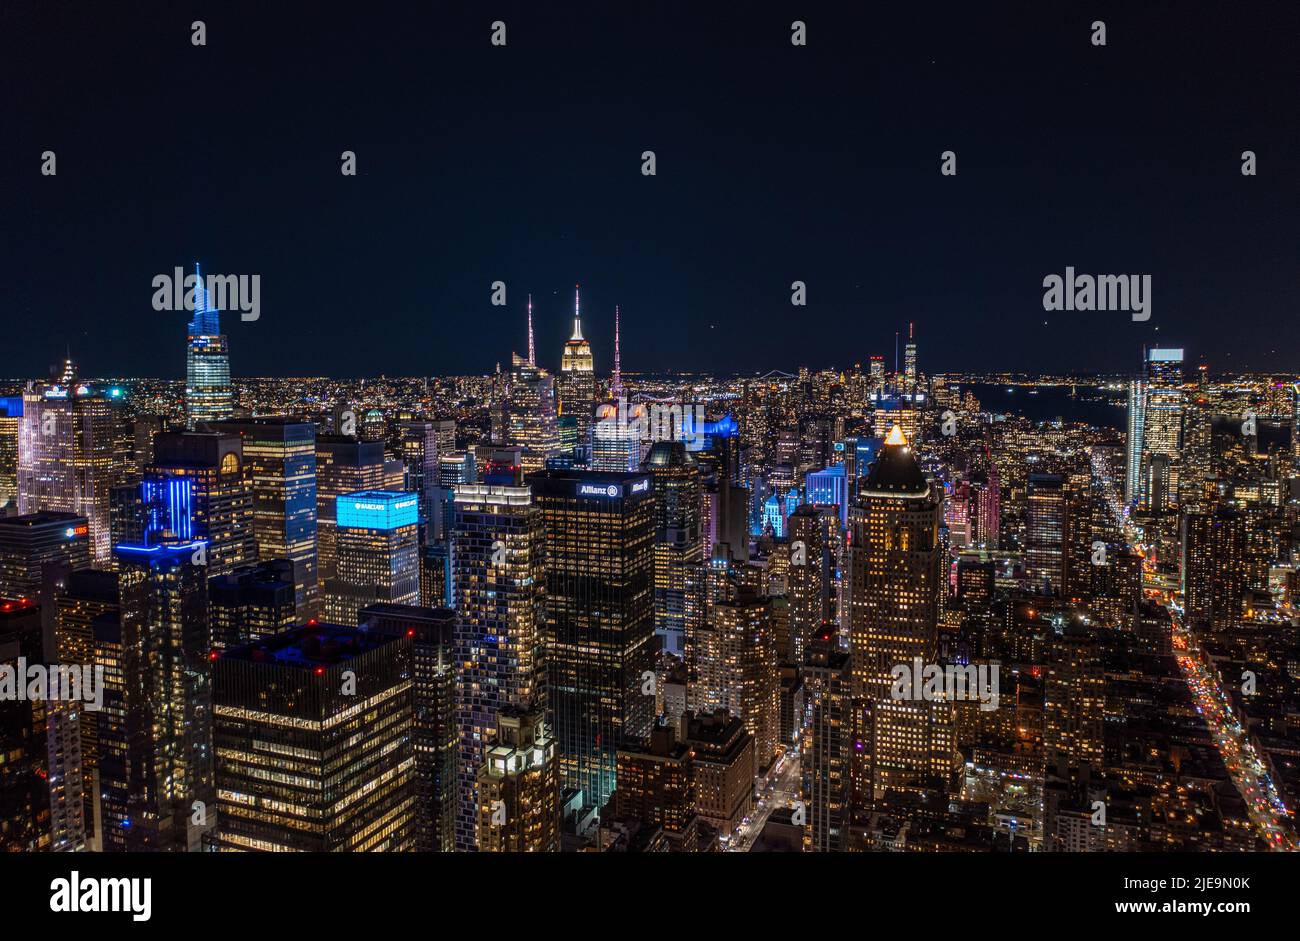 Luftpanorama der Metropole bei Nacht. Farbenfrohe Neonlichter an Hochhäusern in Stadtbezirks. Manhattan, New York City, USA Stockfoto